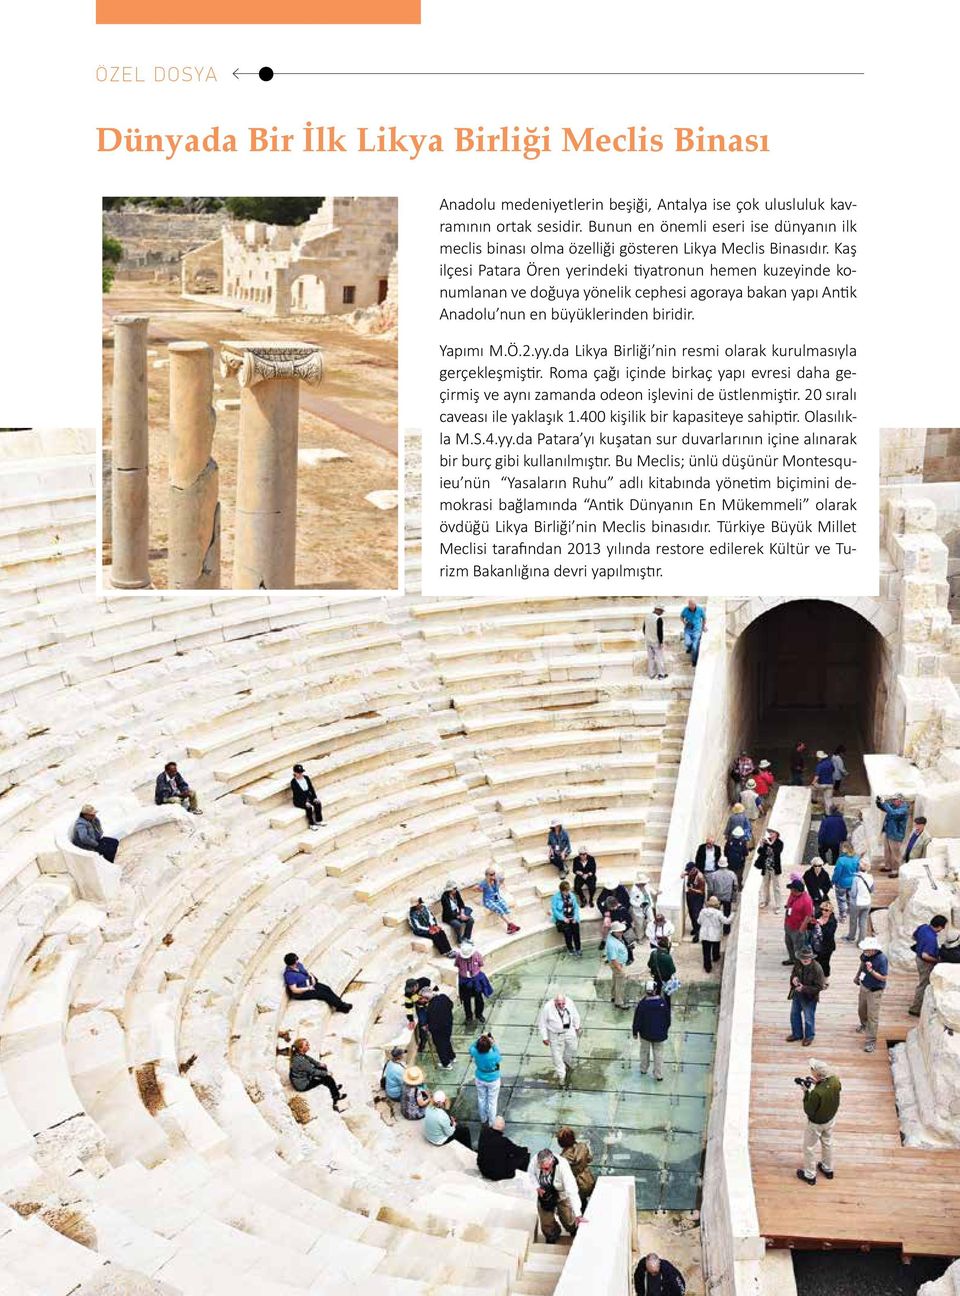 Kaş ilçesi Patara Ören yerindeki tiyatronun hemen kuzeyinde konumlanan ve doğuya yönelik cephesi agoraya bakan yapı Antik Anadolu nun en büyüklerinden biridir. Yapımı M.Ö.2.yy.